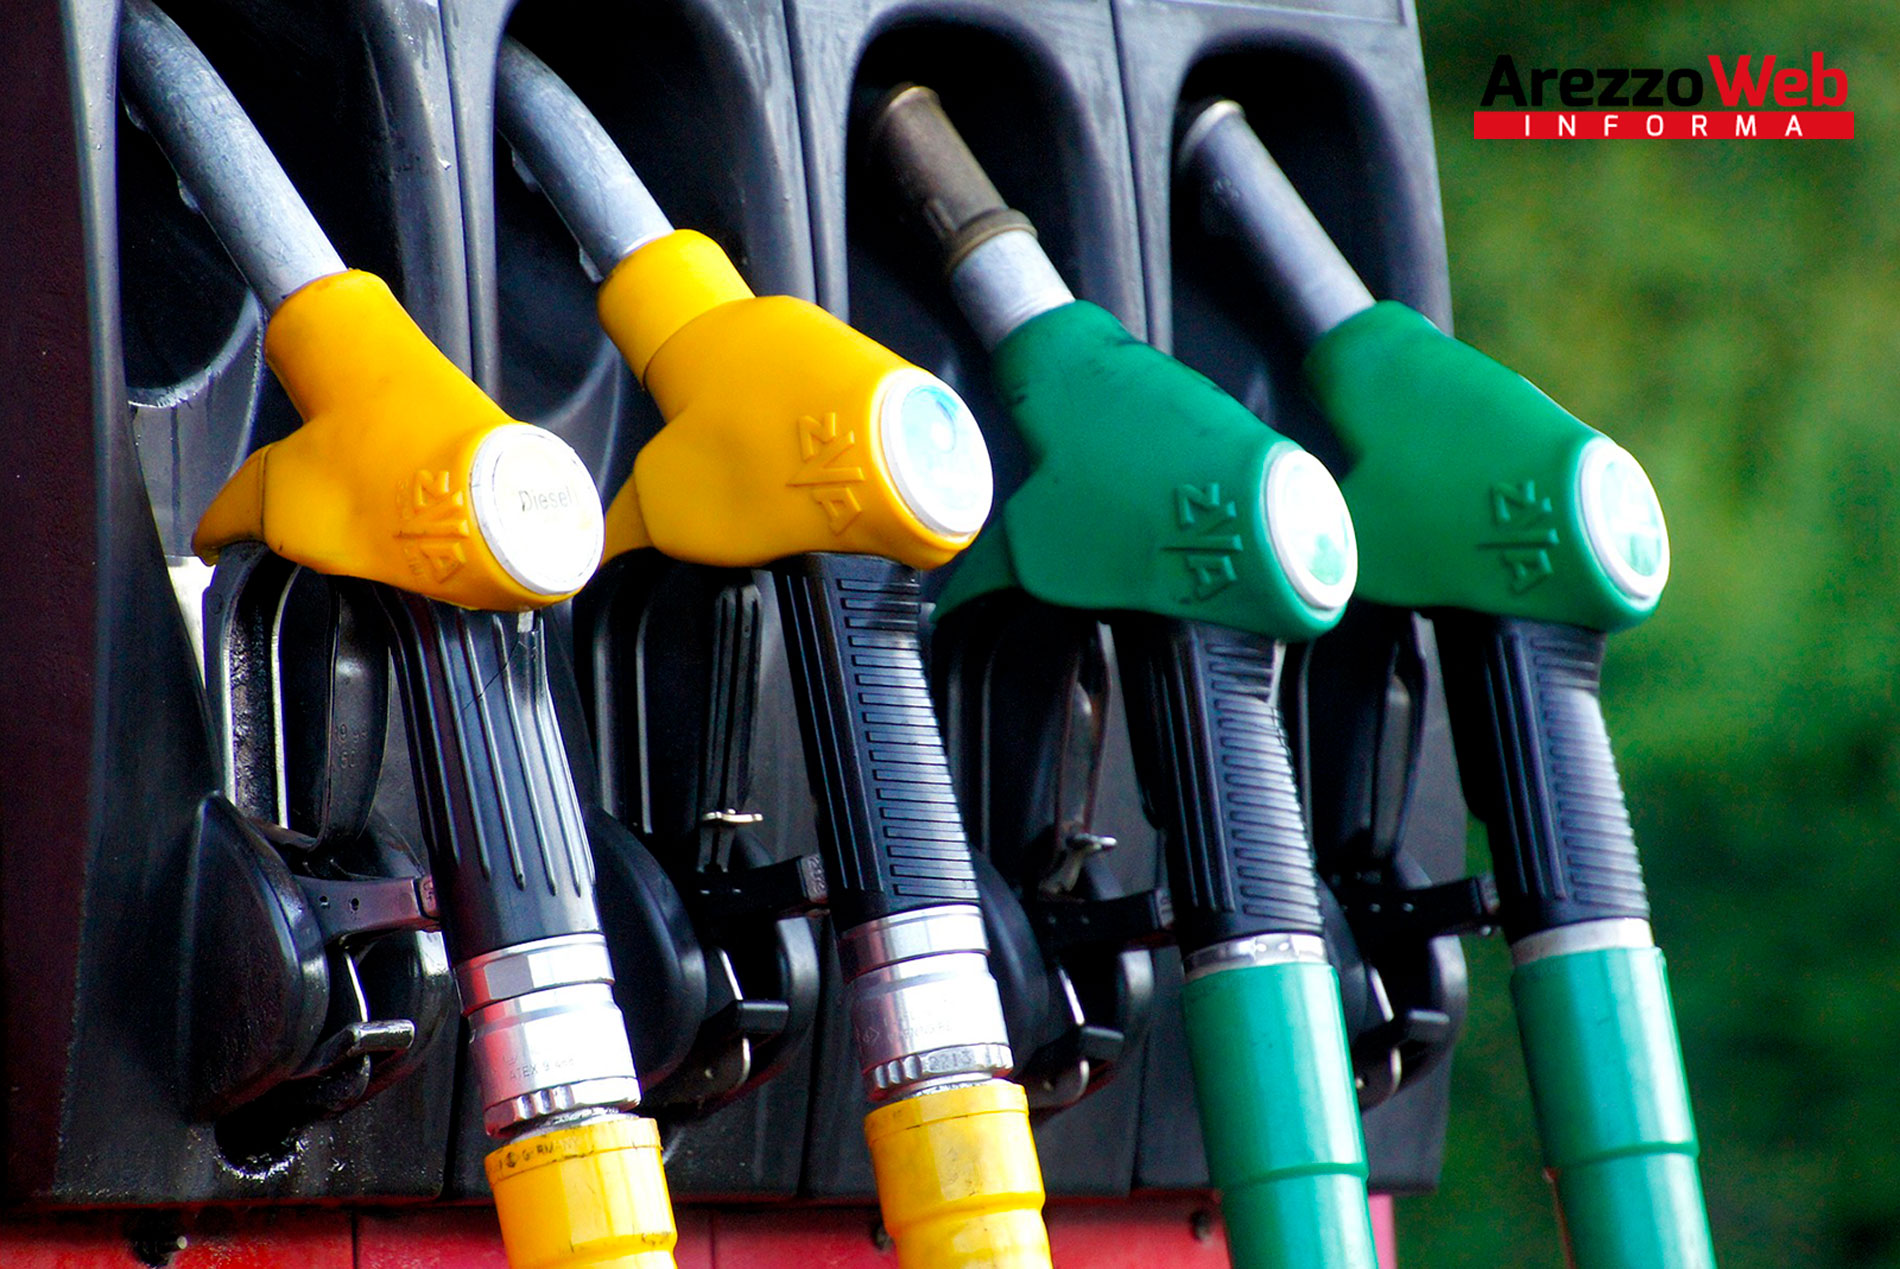 Sciopero dei benzinai il 6 e 7 novembre. Ecco quelli aretini che restano comunque aperti